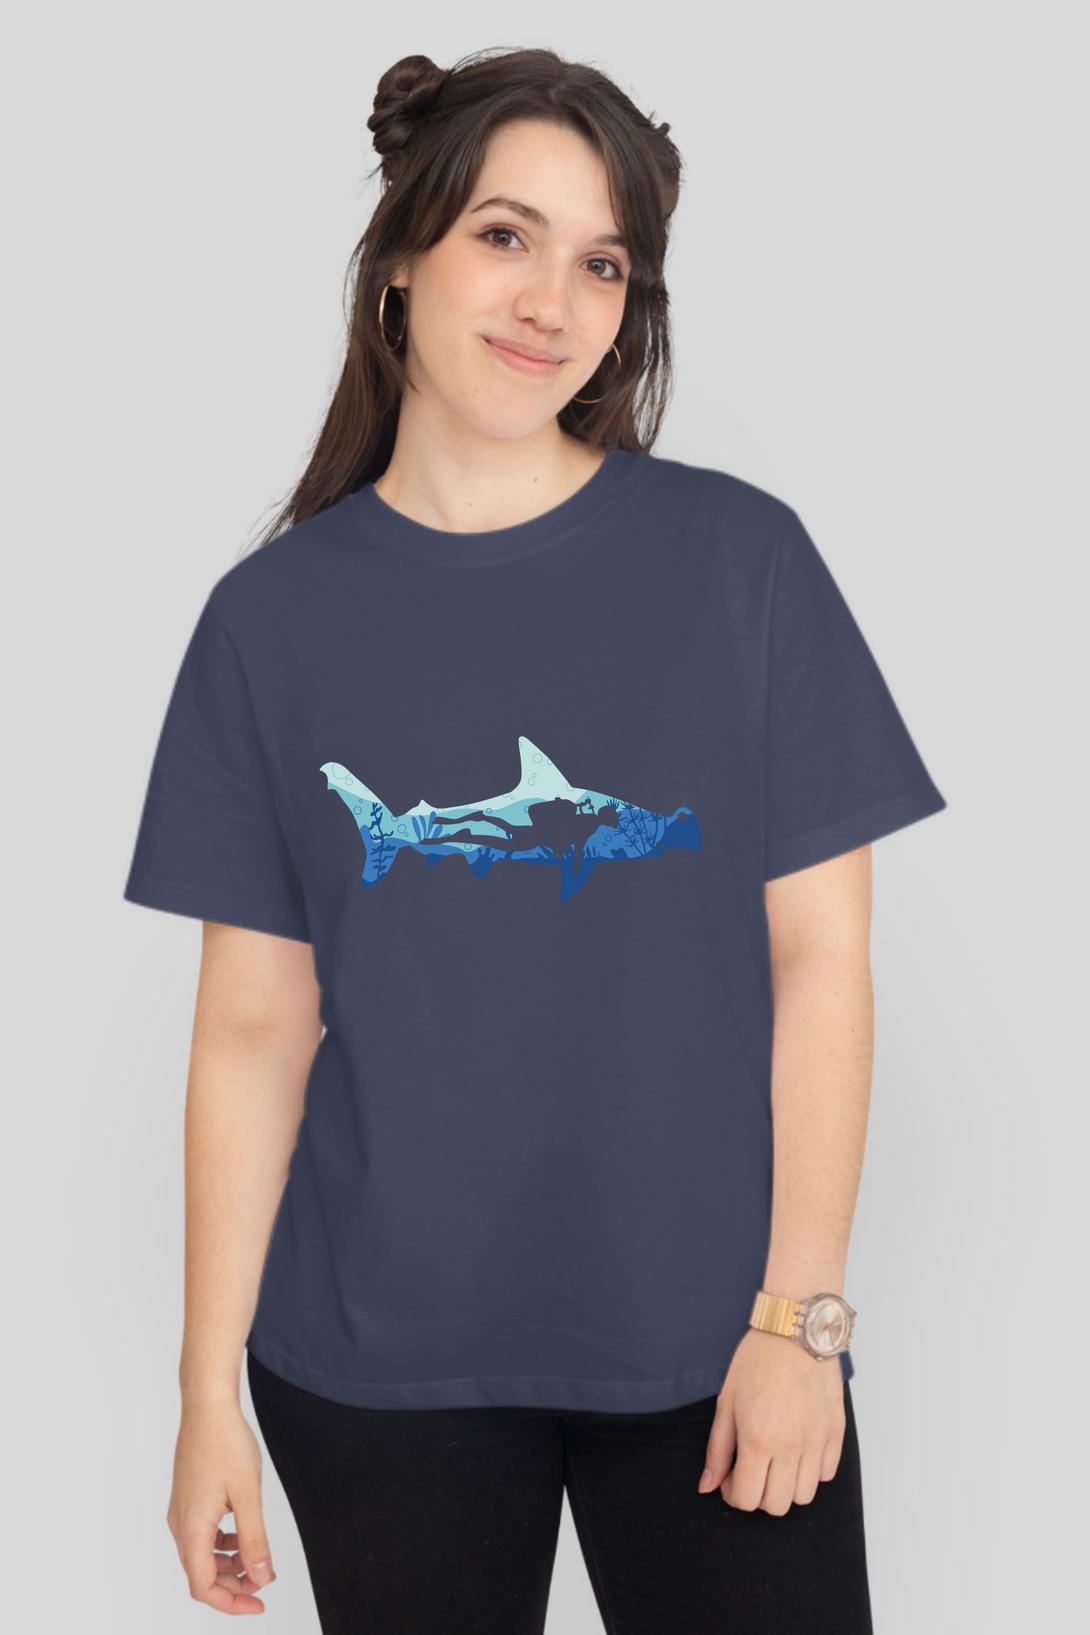 Hammerhead Shark Dive Printed T-Shirt For Women - WowWaves - 9